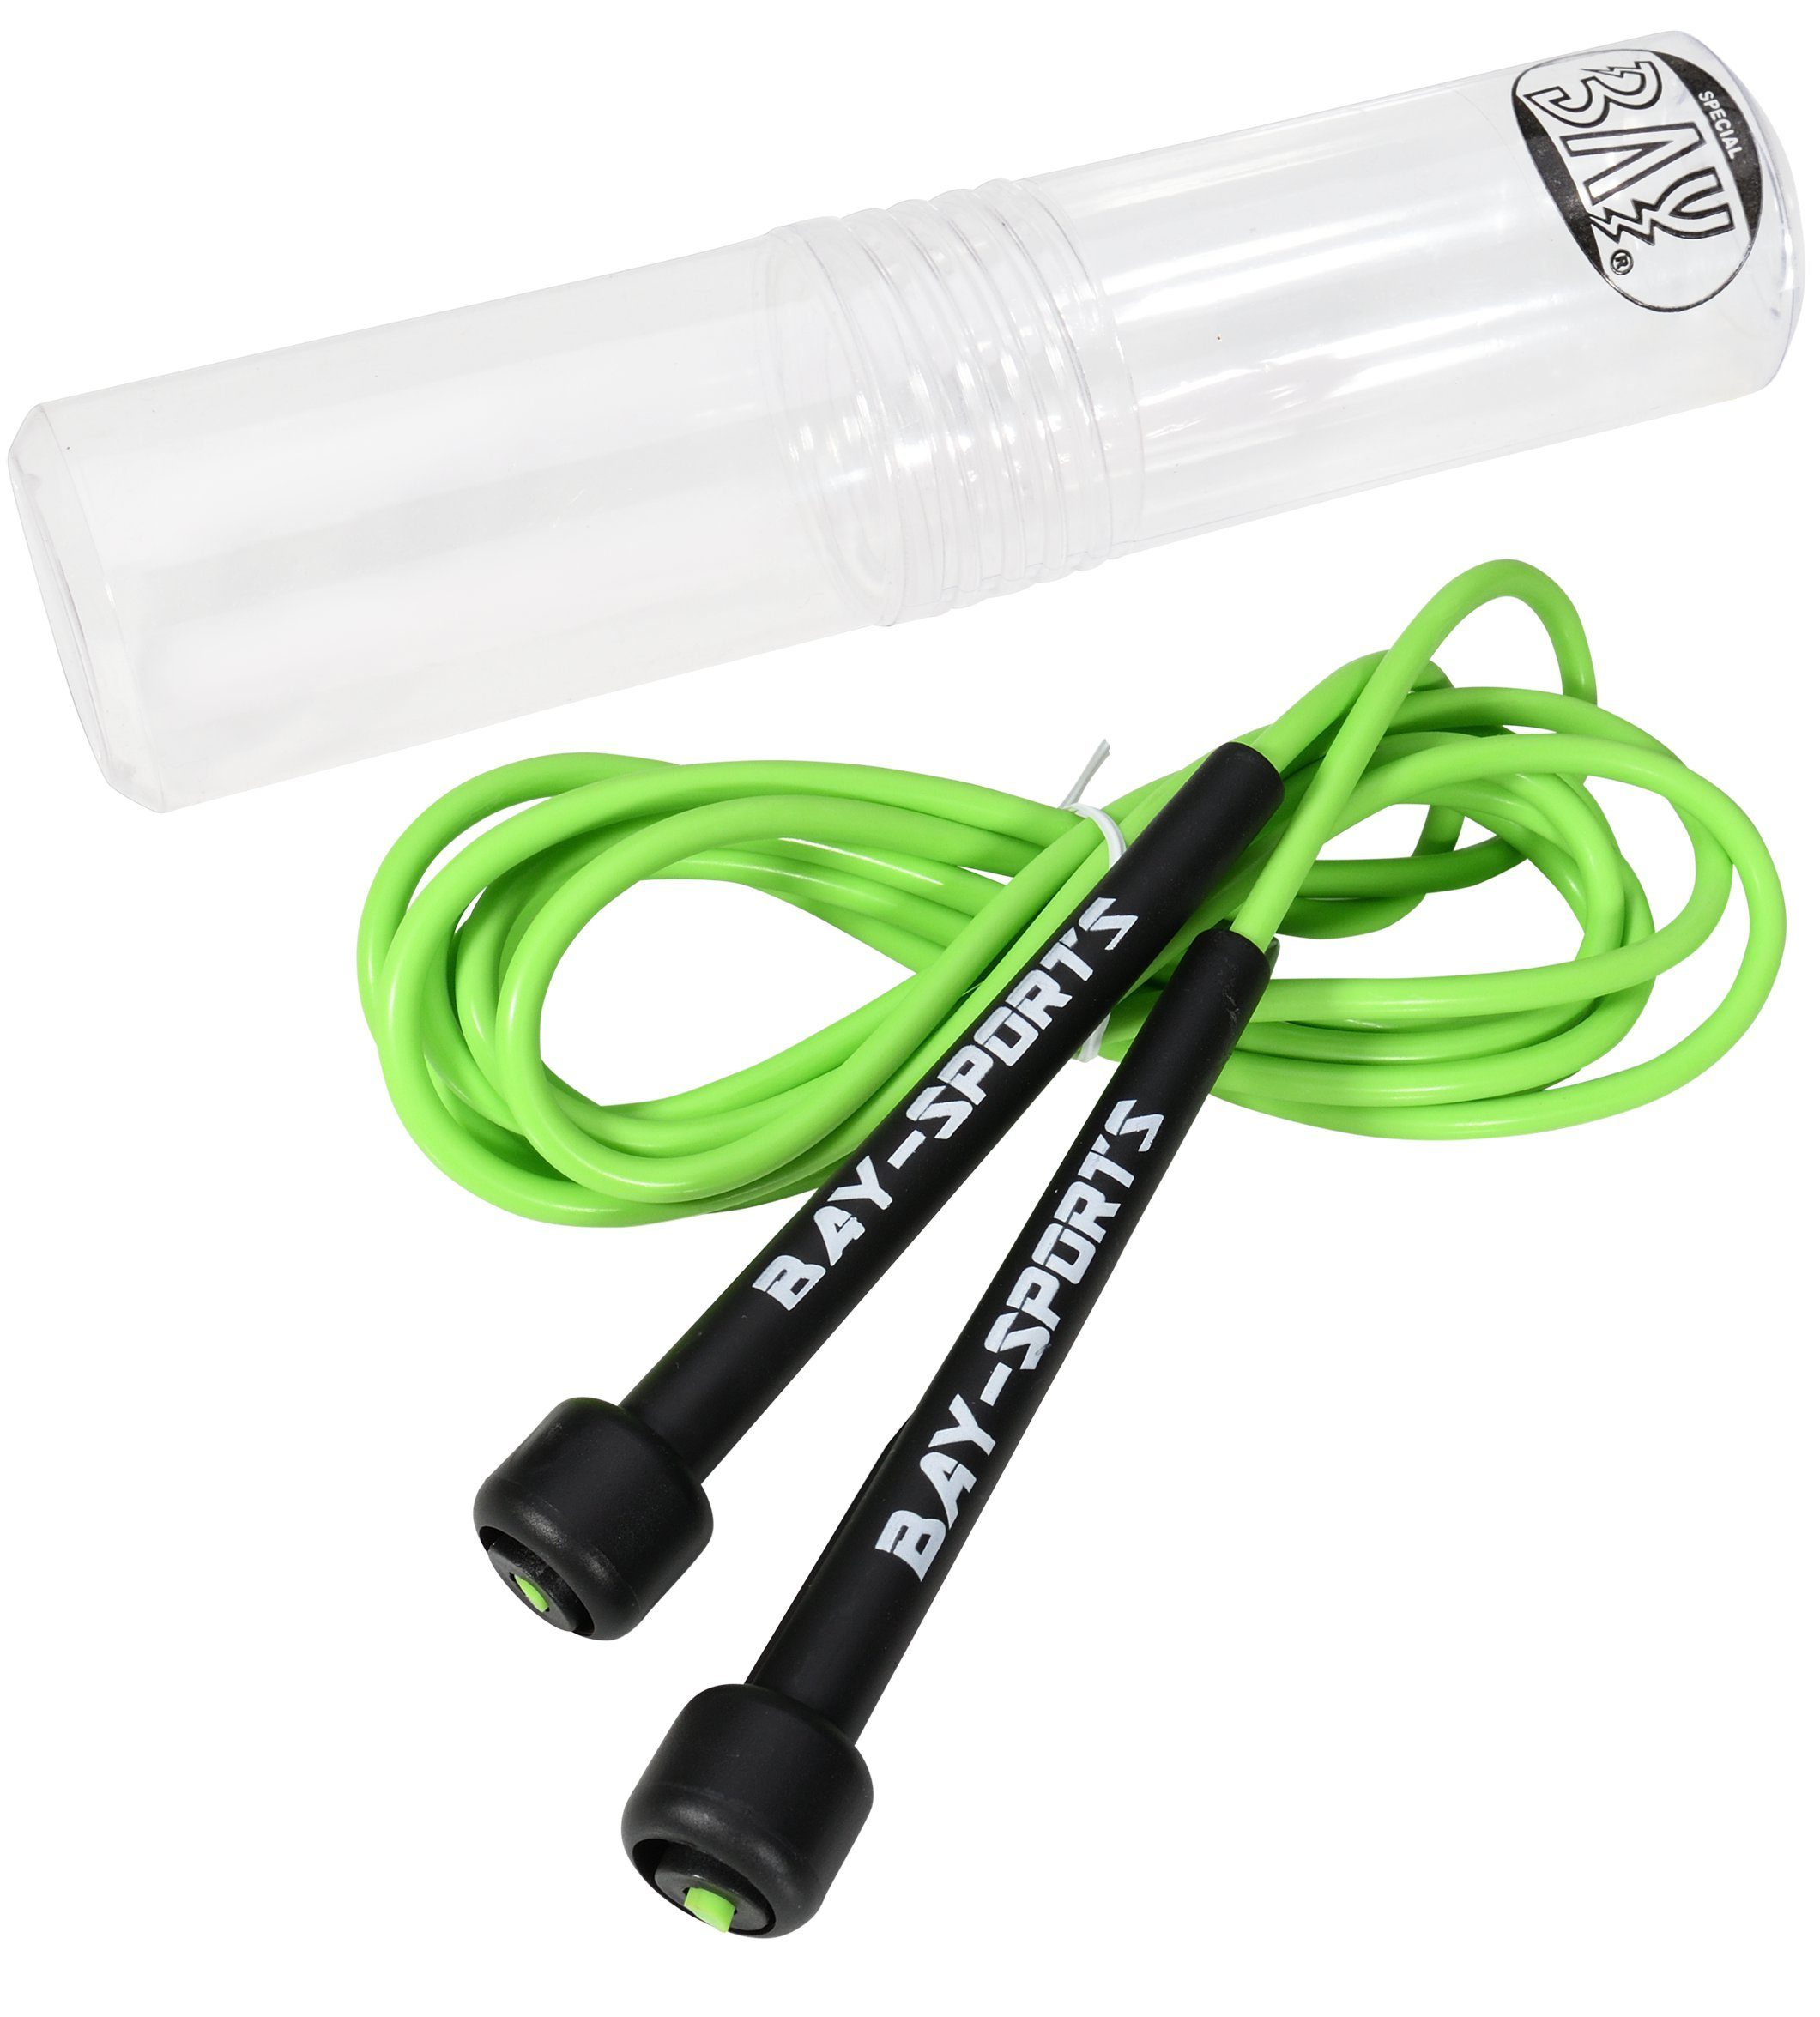 BAY-Sports Springseil High Speed Nylon Sprungseil grün Hüpfseil Skipping Rope Adult, Stufenlos Längenverstellbar - Leicht und ergonomisch